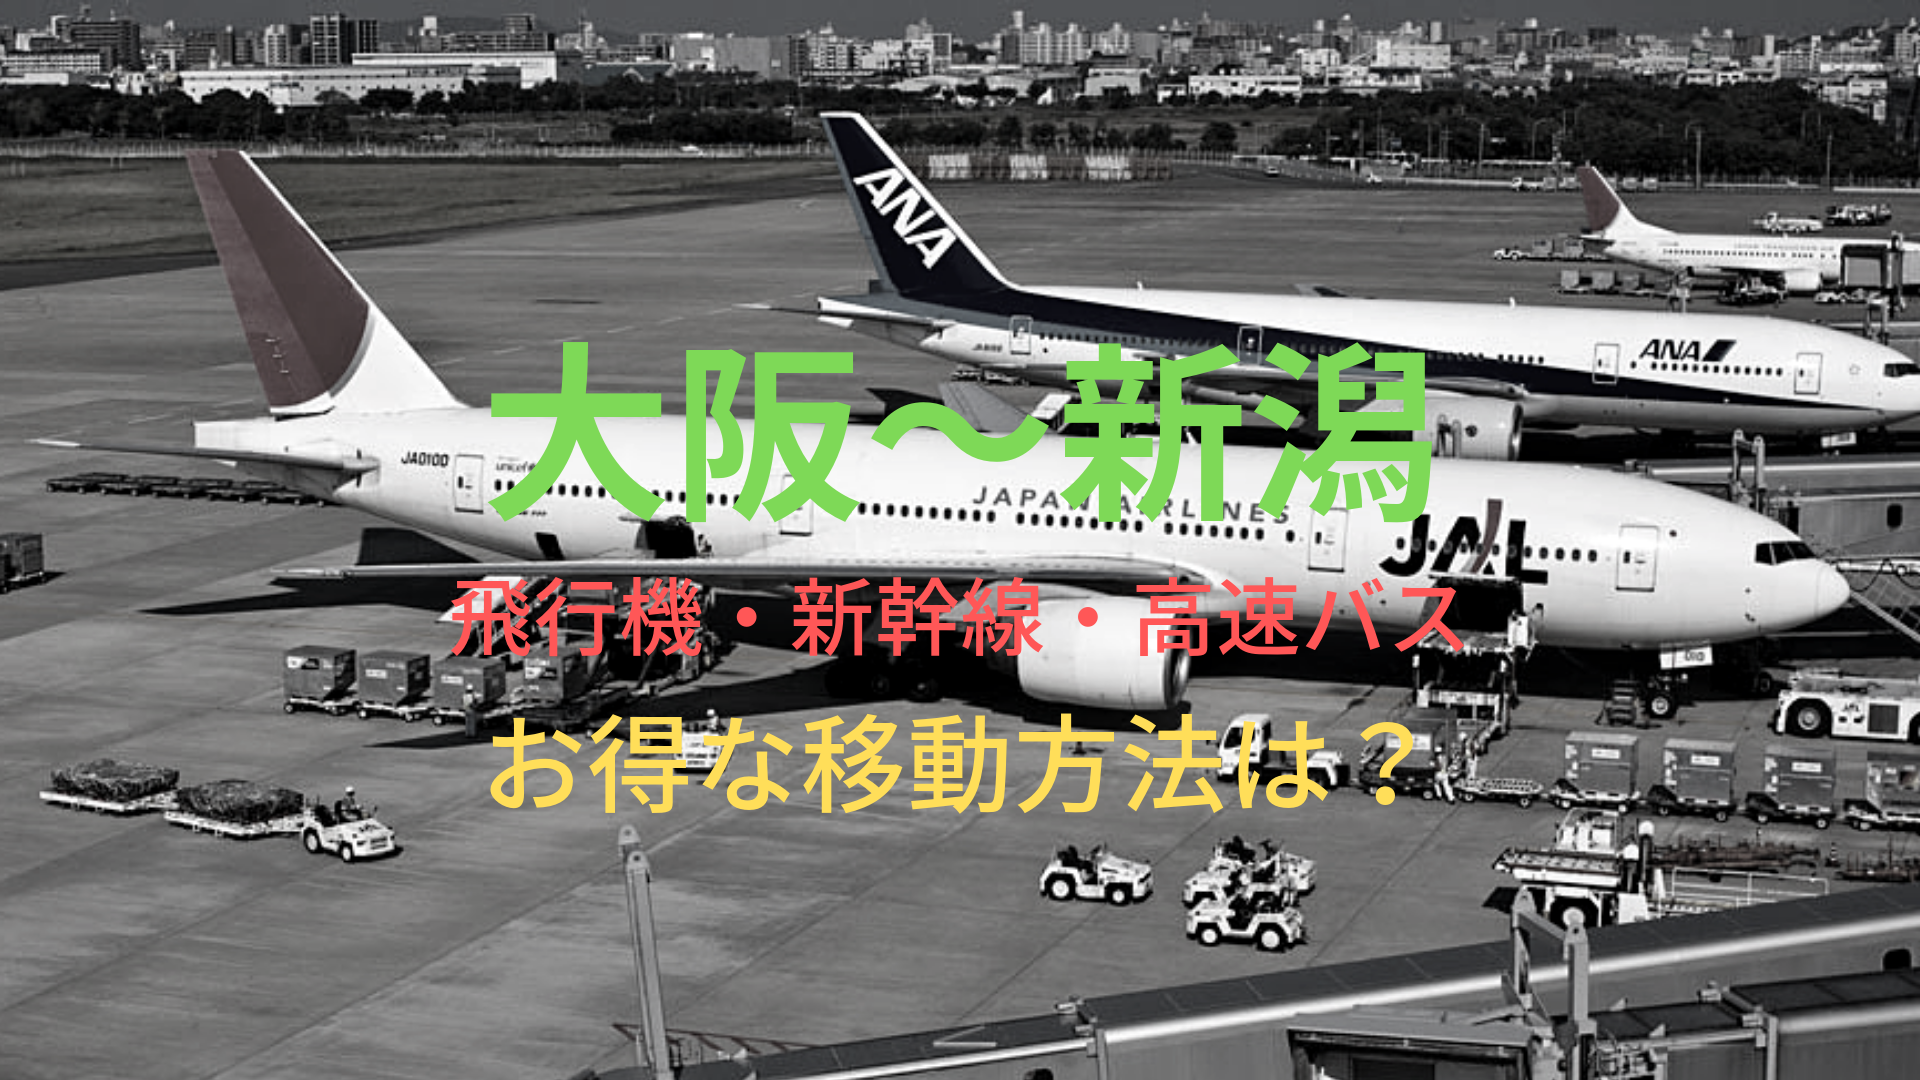 大阪 新潟 4600円 格安で移動する方法は 飛行機 新幹線 高速バスをそれぞれ比較 ばしたく交通